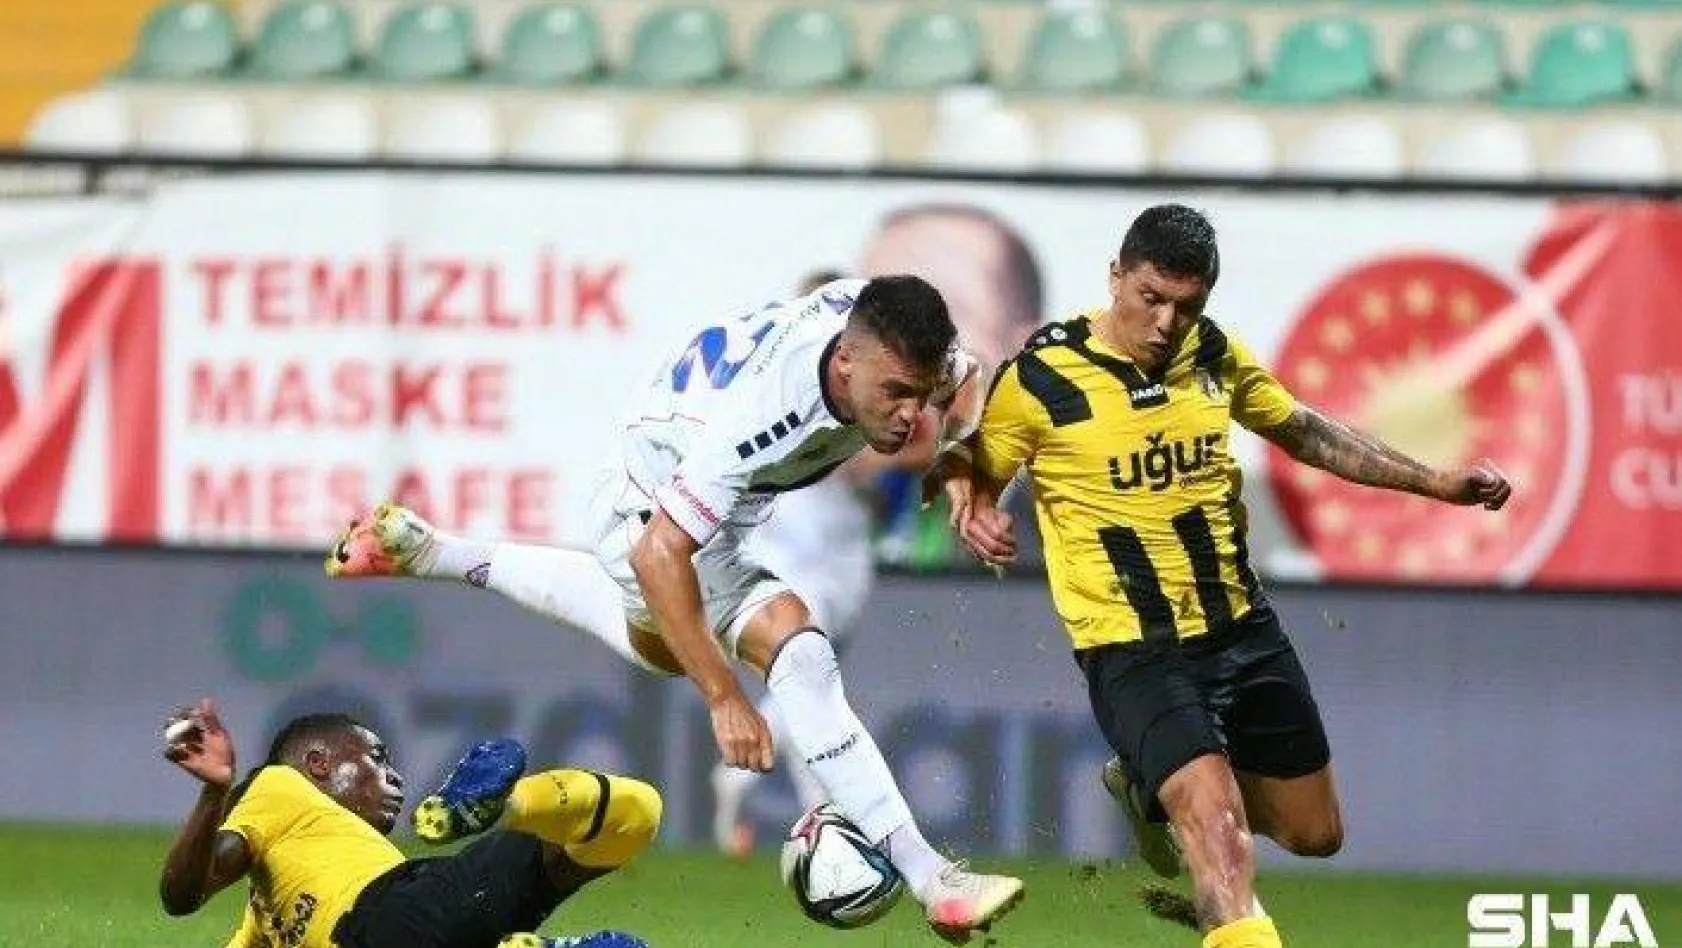 TFF 1. Lig: İstanbulspor: 3 - Altınordu: 0 (Maç sonucu)